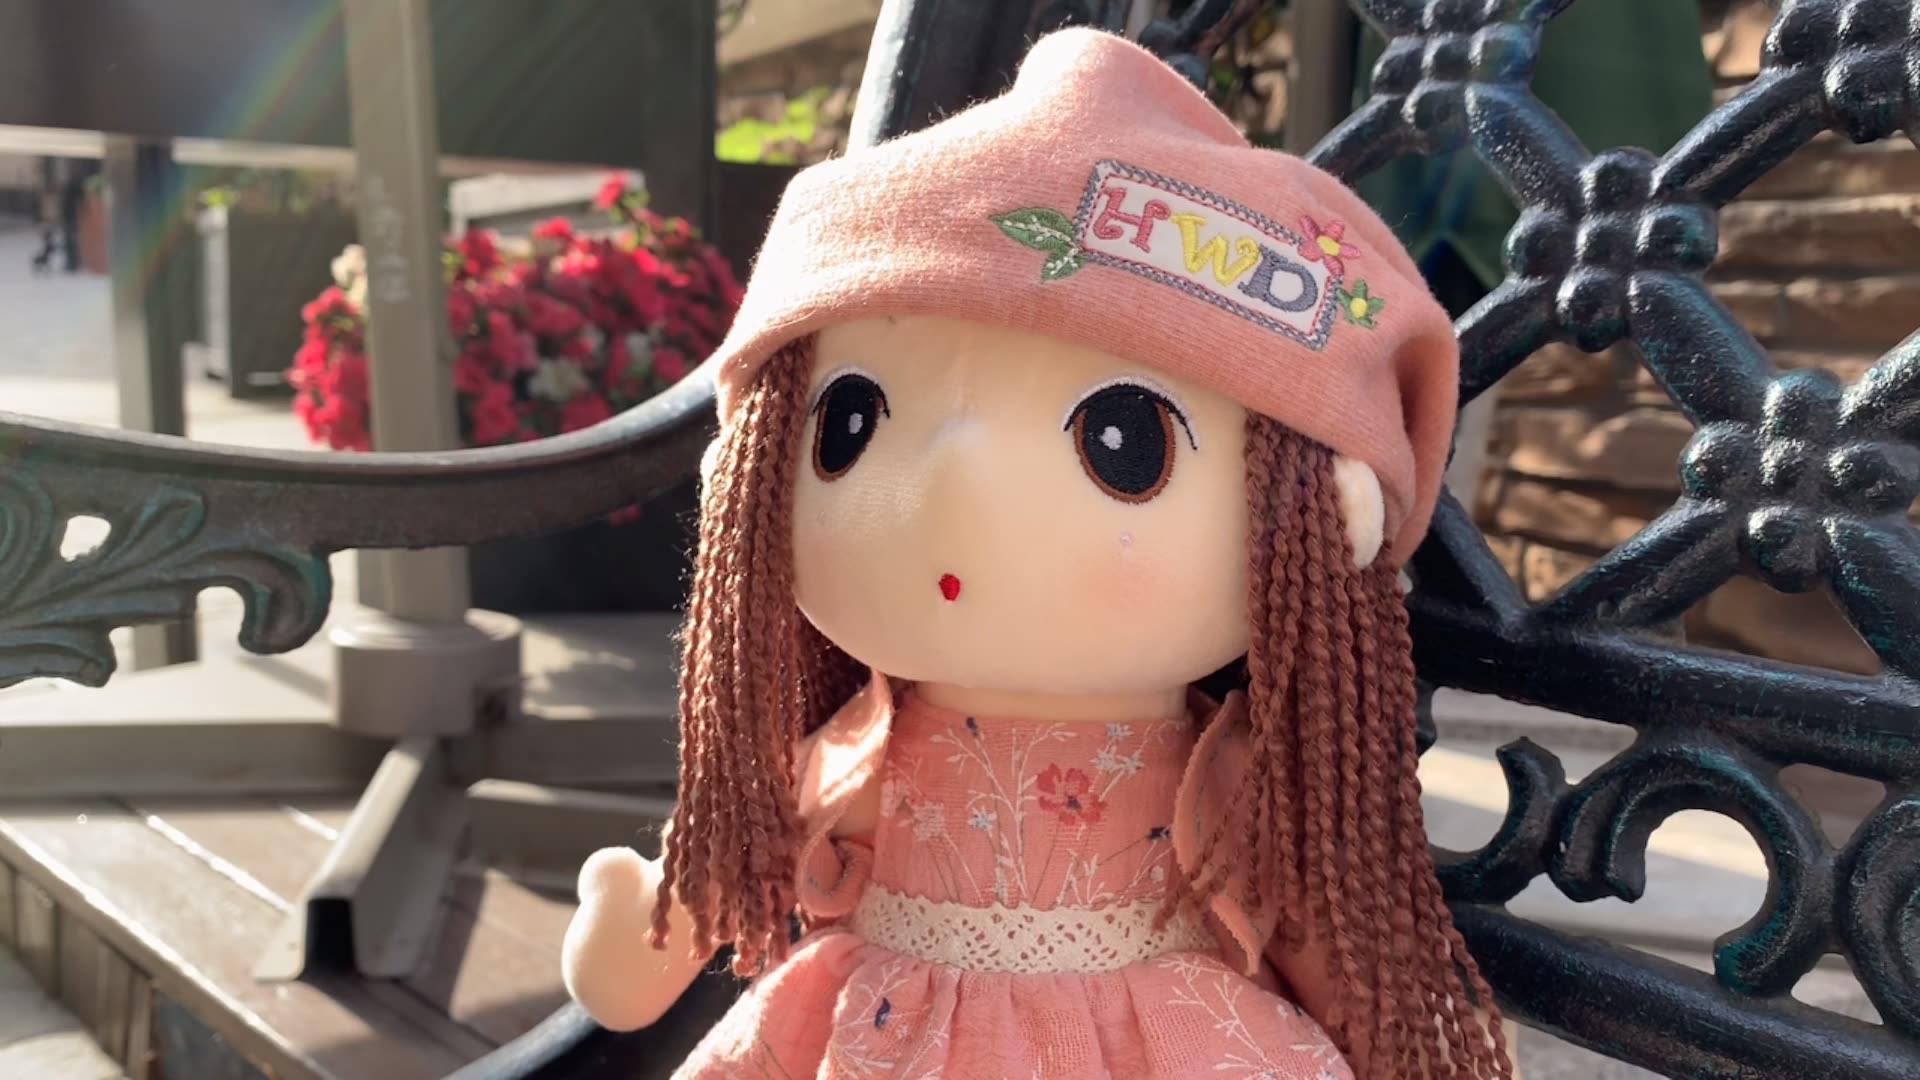 Fairy Girl Rag Doll Kawaii Plush Toy - TOY-PLU-65204 - Haoweida - 42shops